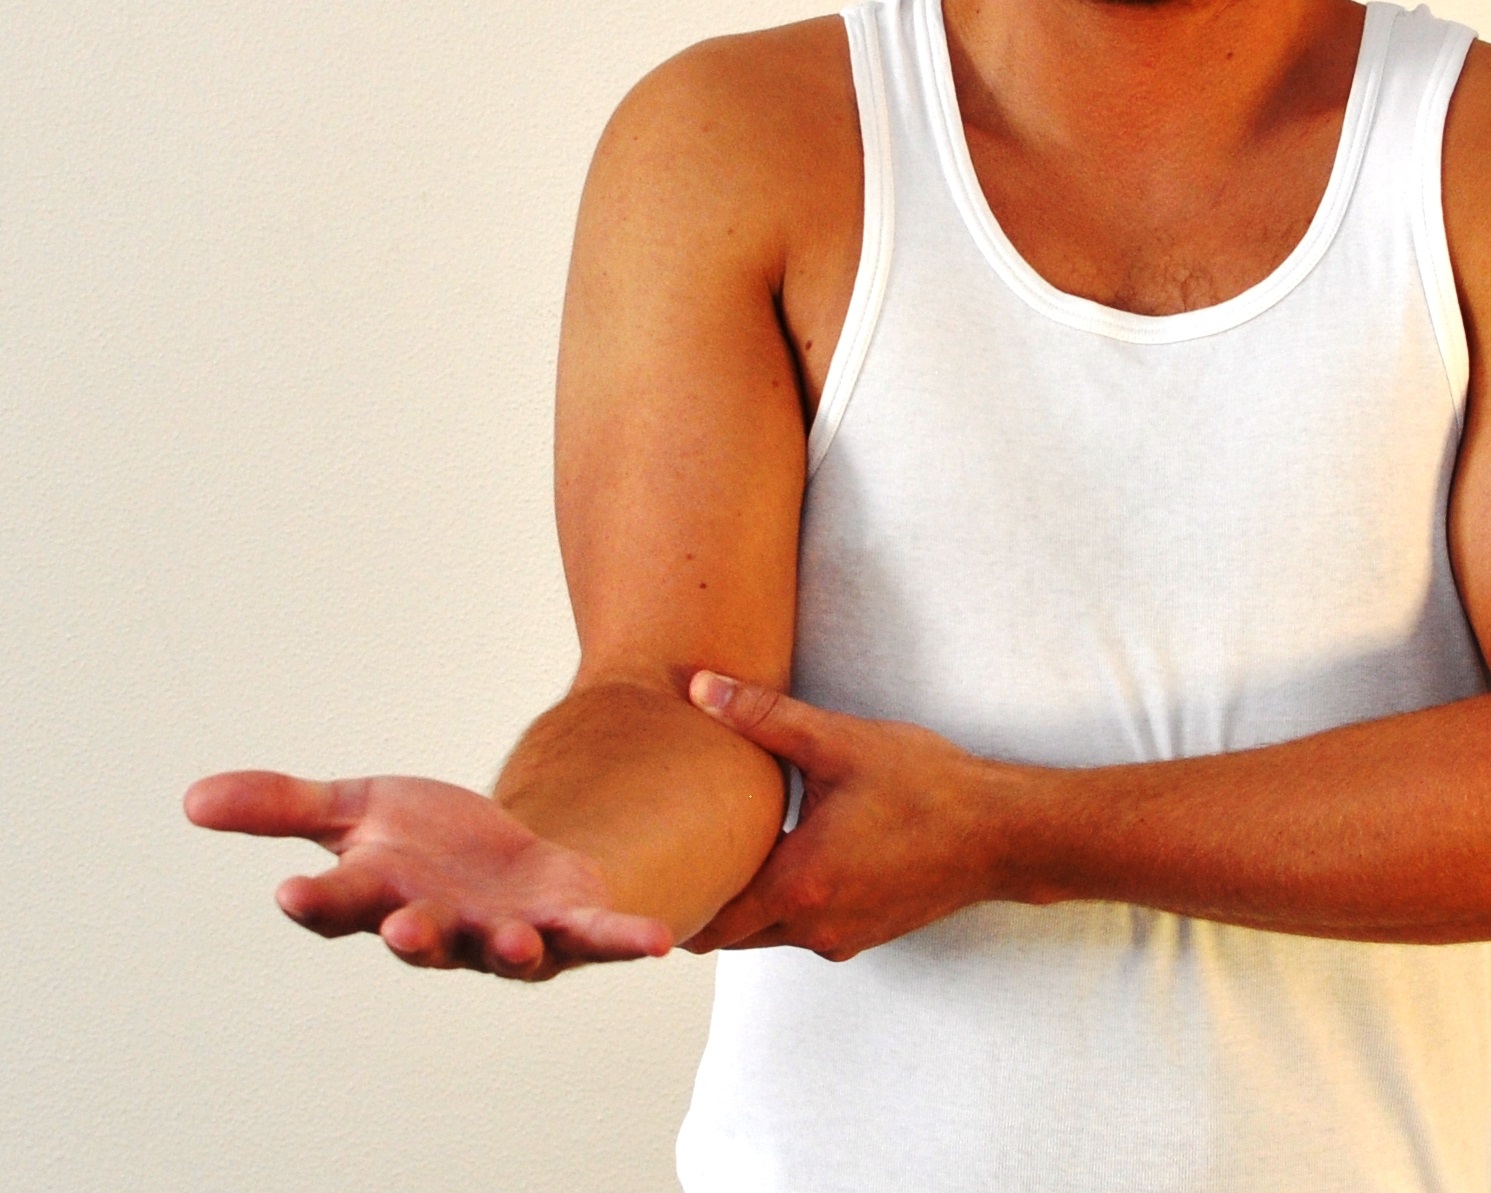 billede af bøjet albue og strakt underarm hvor håndfladen vender opad